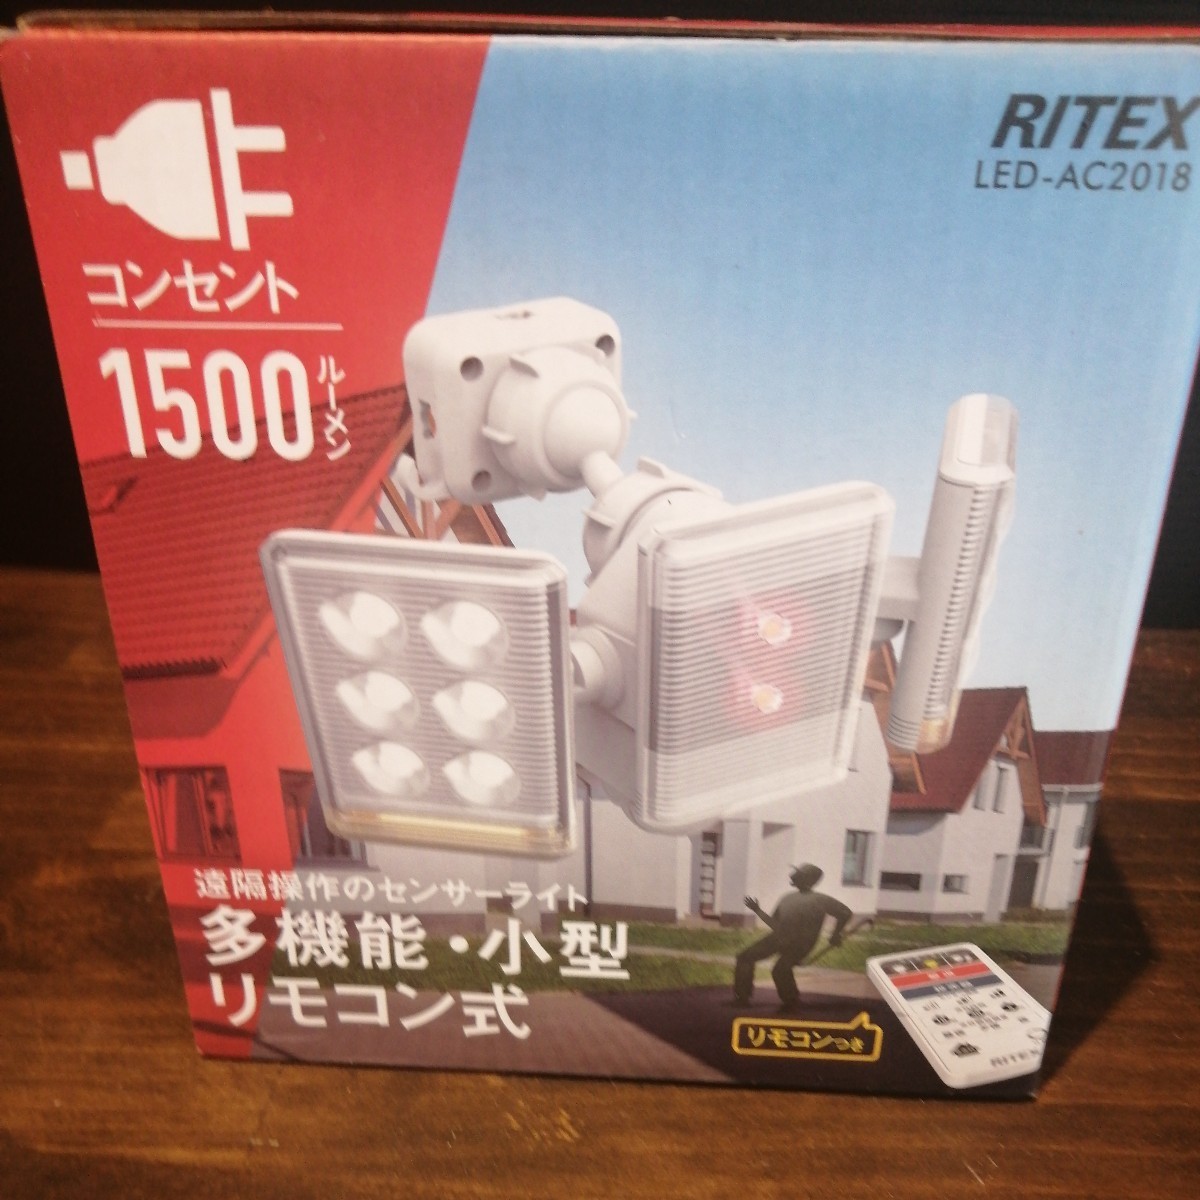  9W×2灯 フリーアーム式LEDセンサーライト リモコン付 LED-AC2018 屋内屋外用 (防雨タイプ IP44) 焦電型赤外線センサー RITEX_画像4